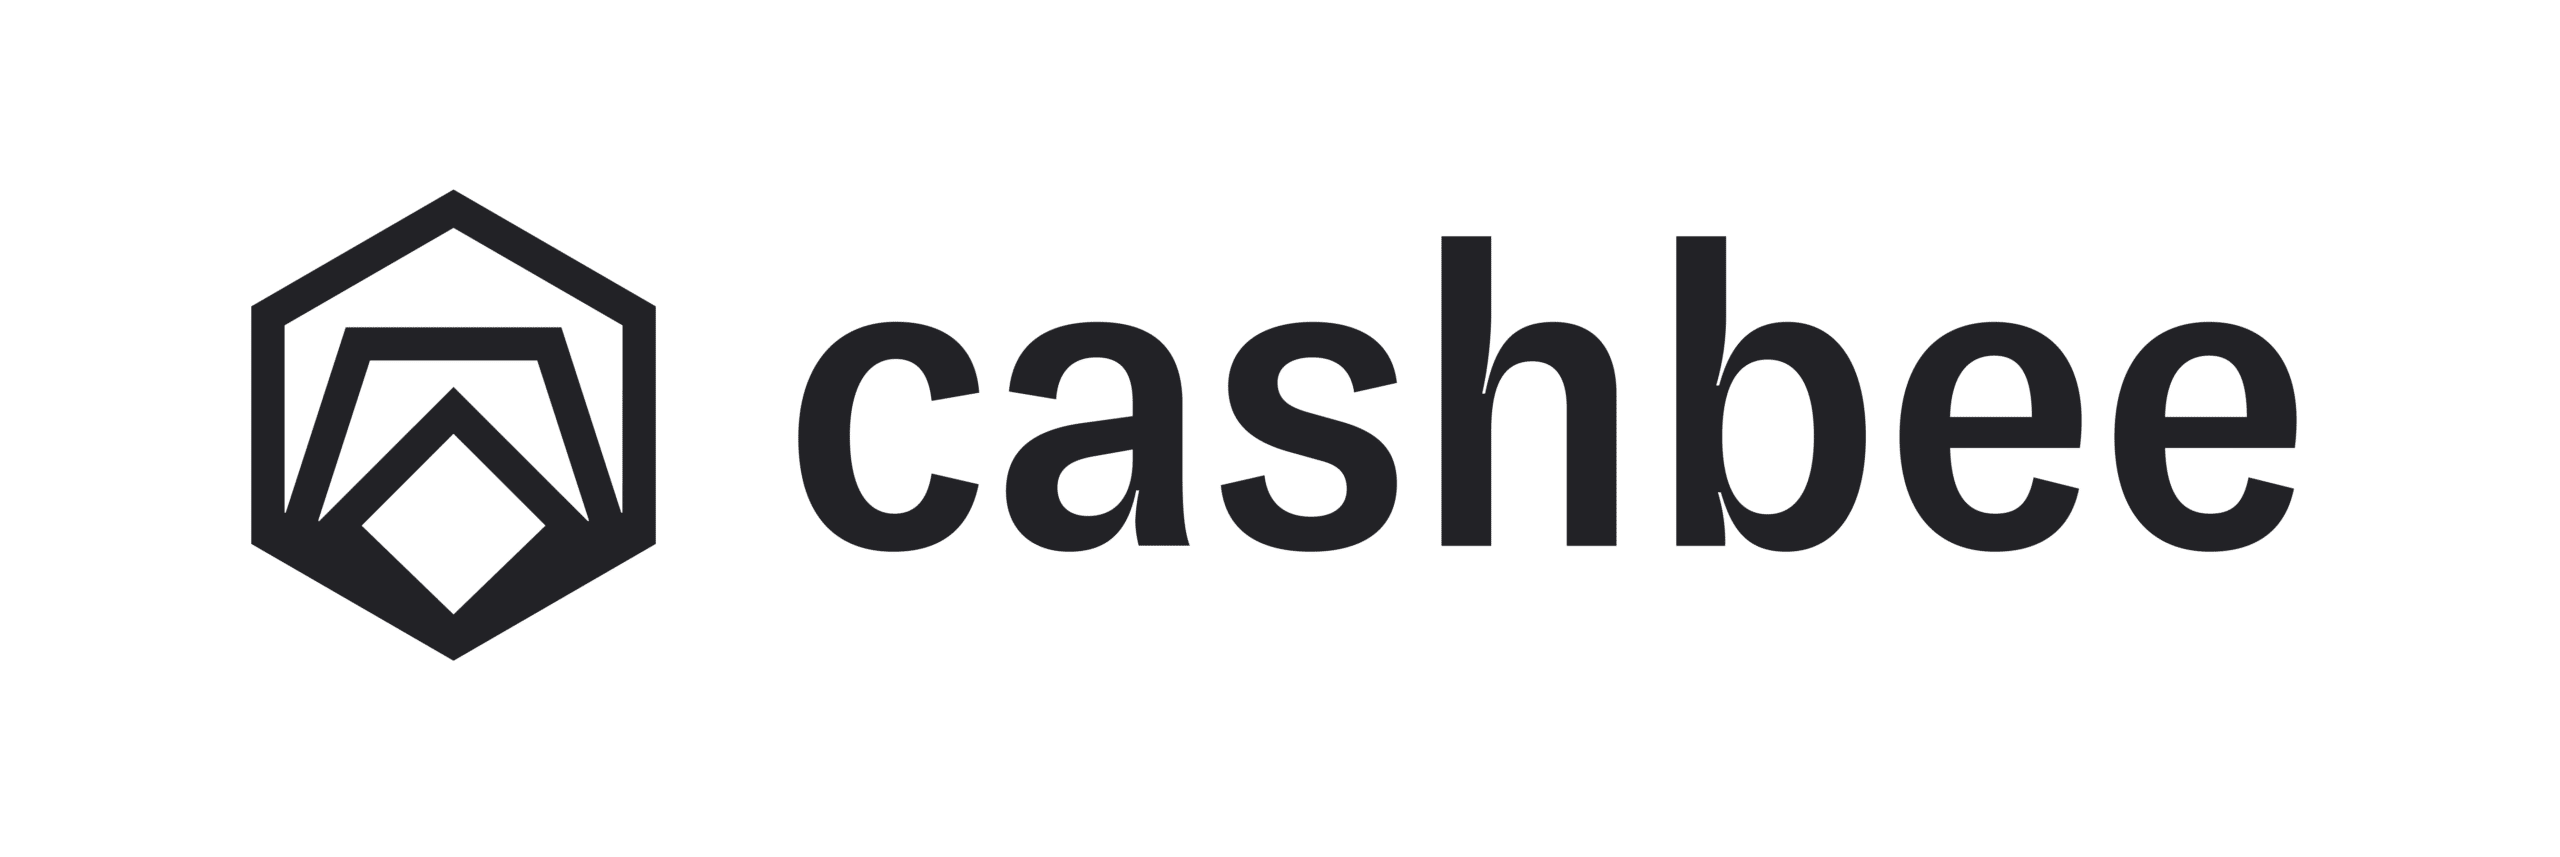 Cashbee - appli d epargne